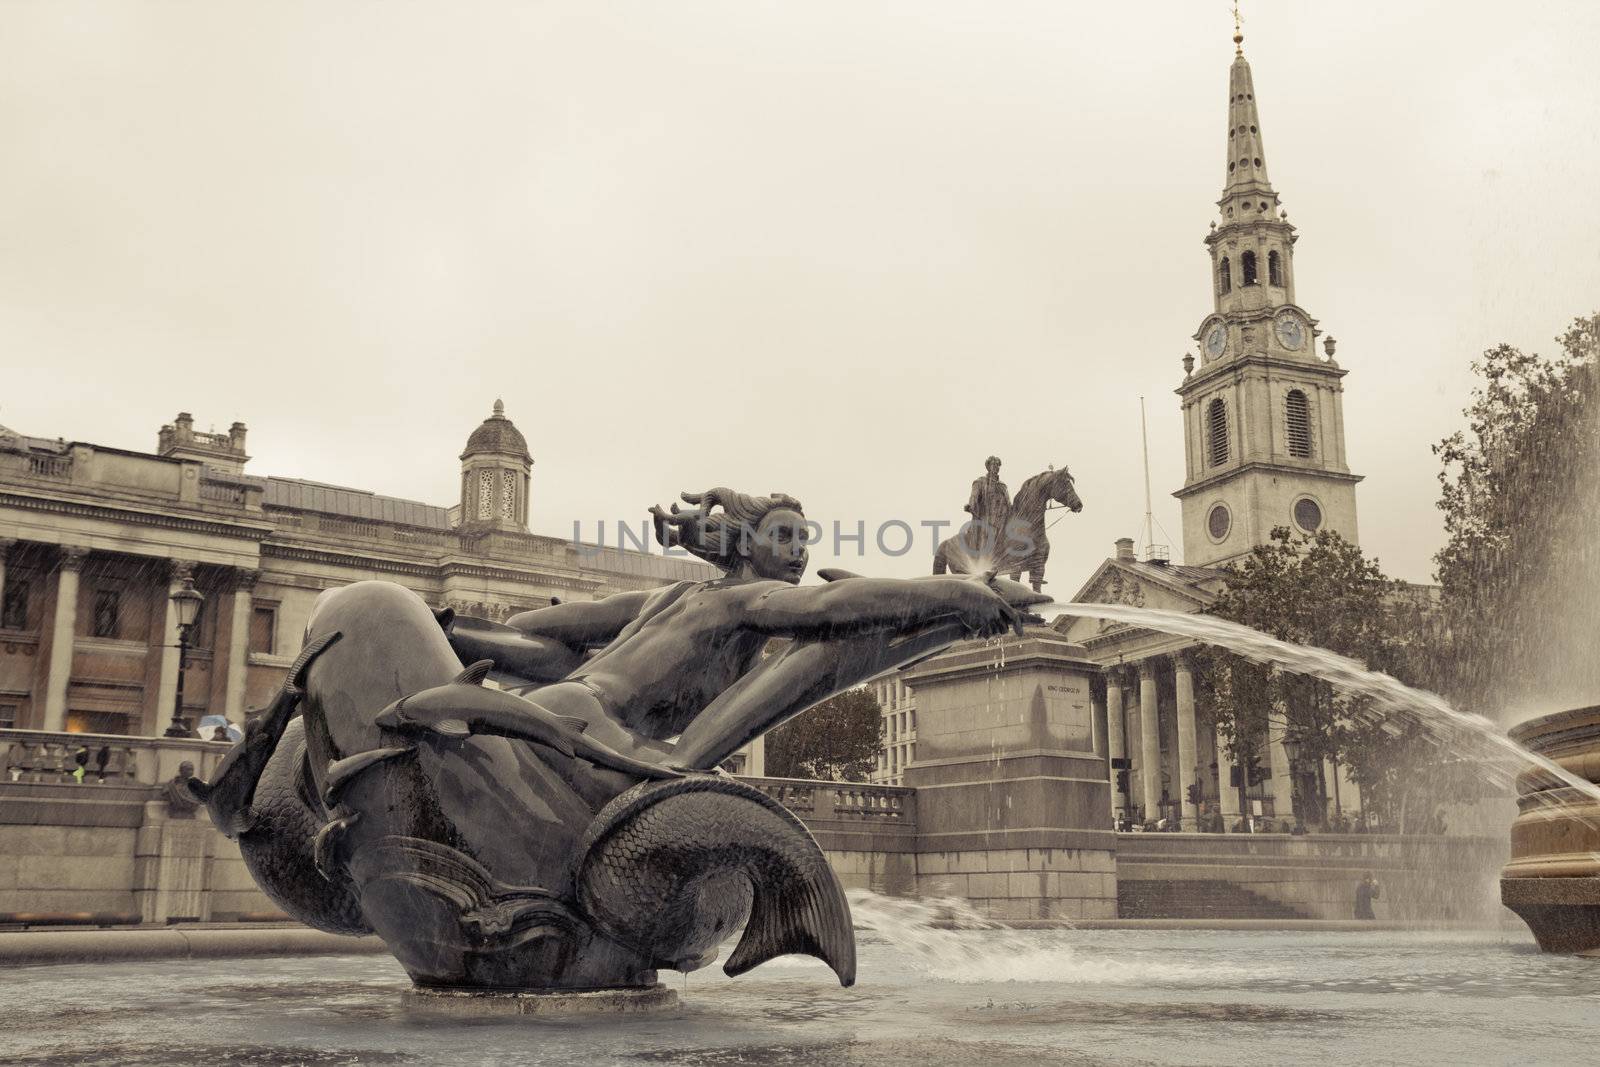 Mermaid statue on Trafalgar Square